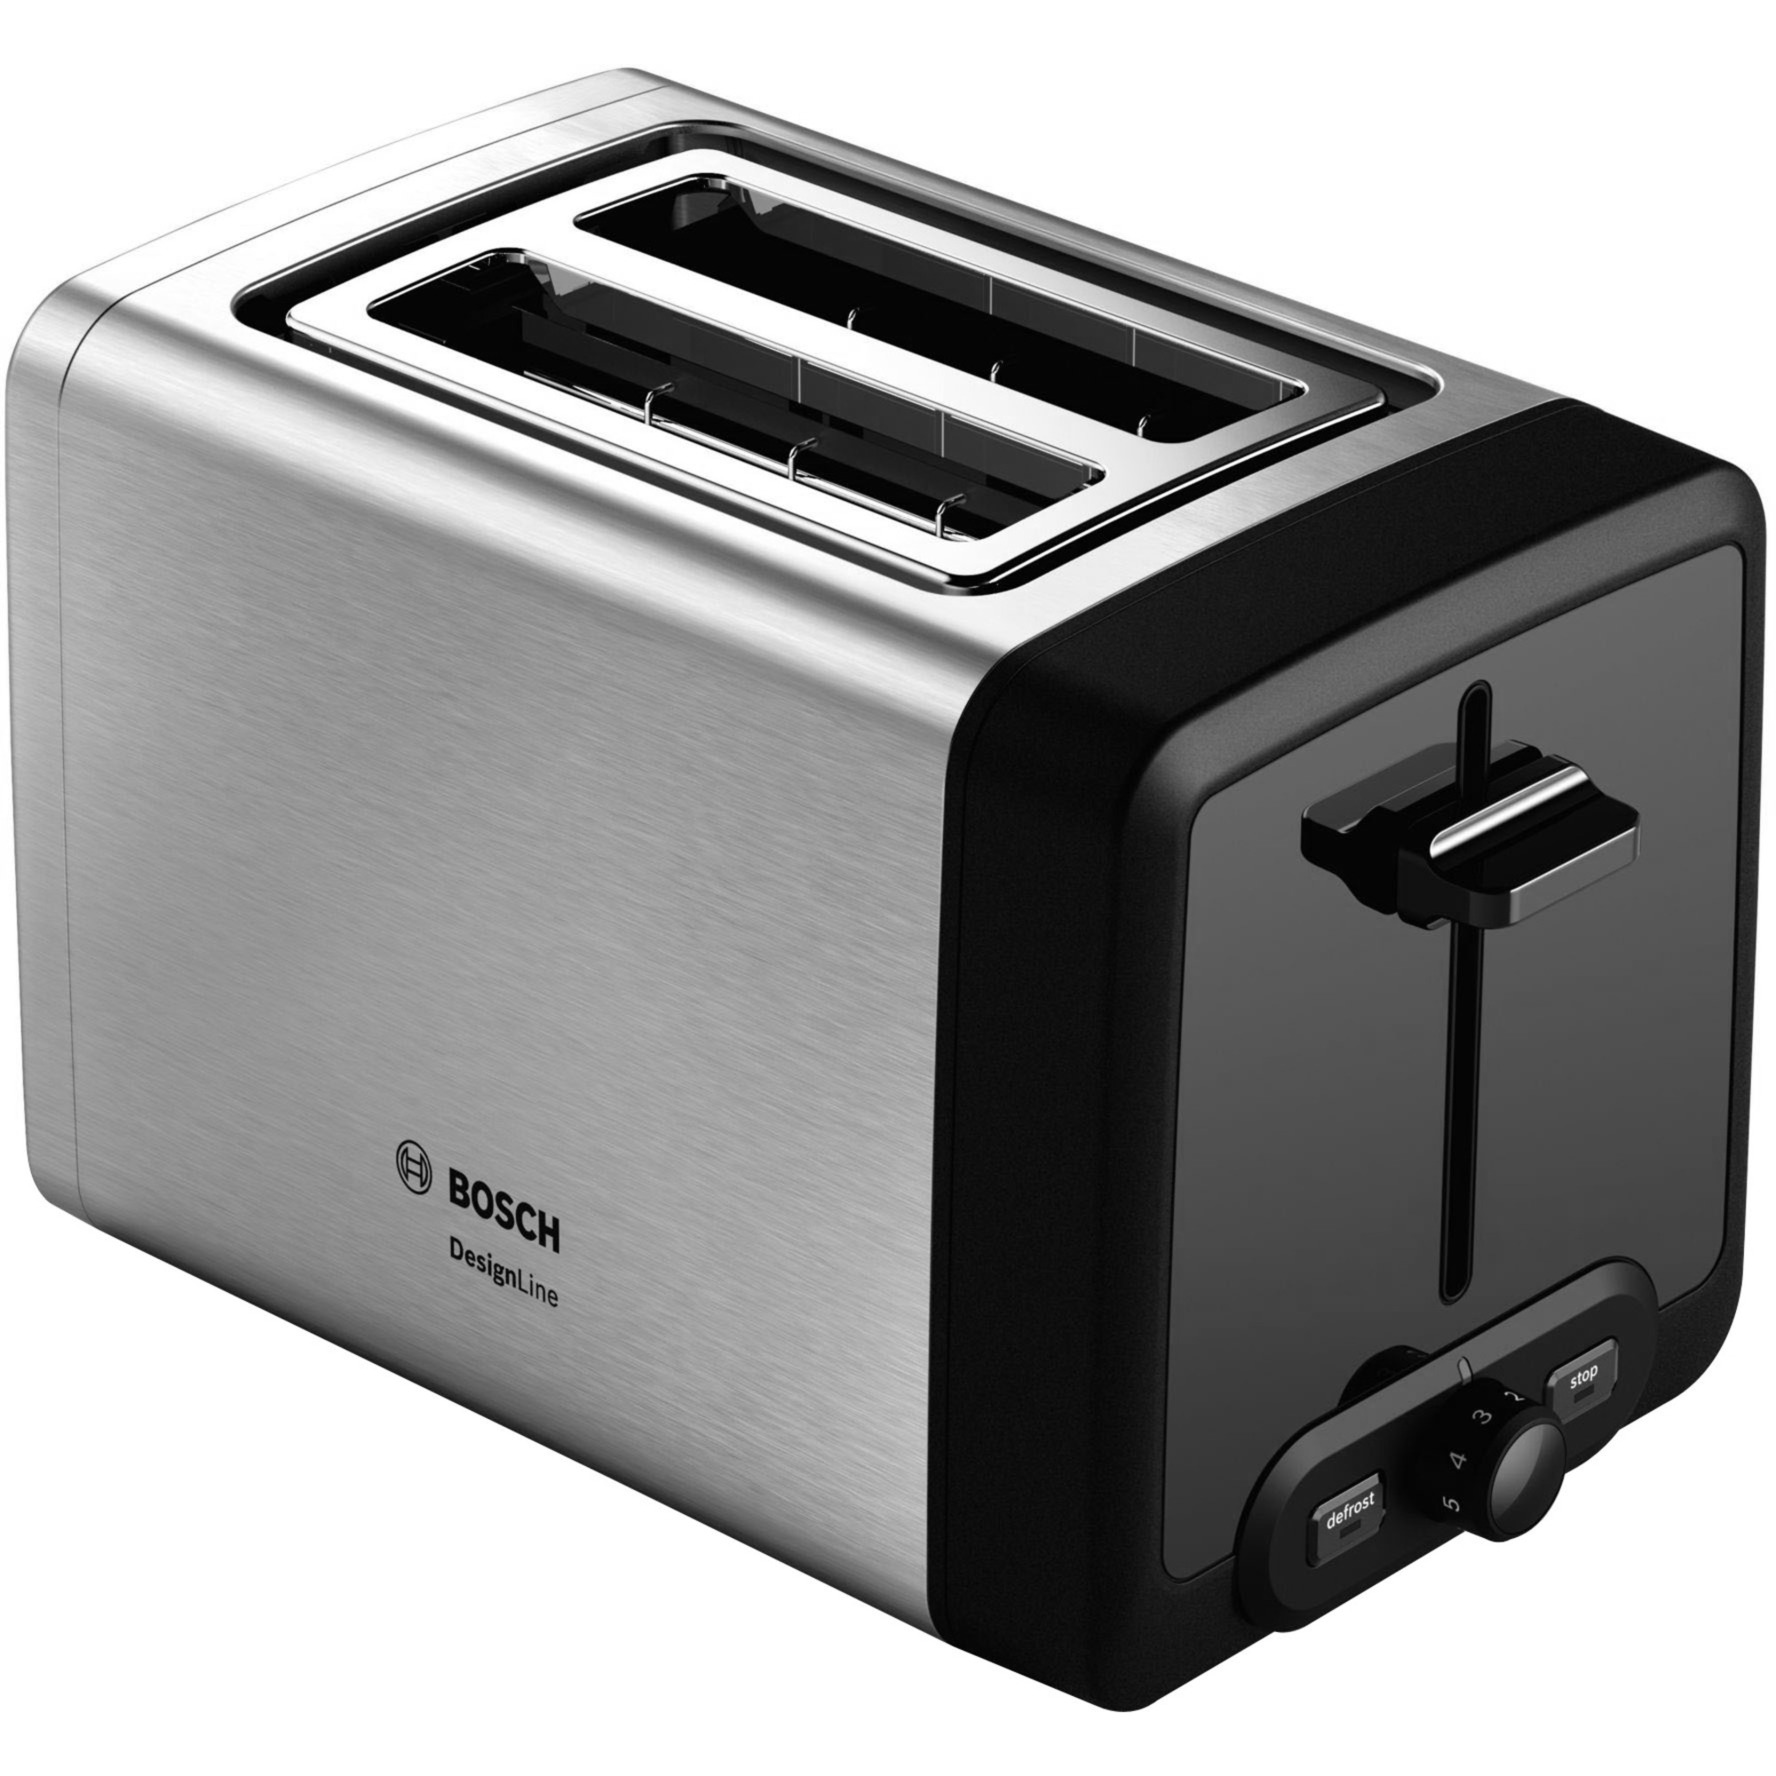 Image of Alternate - Kompakt-Toaster DesignLine TAT4P420DE online einkaufen bei Alternate